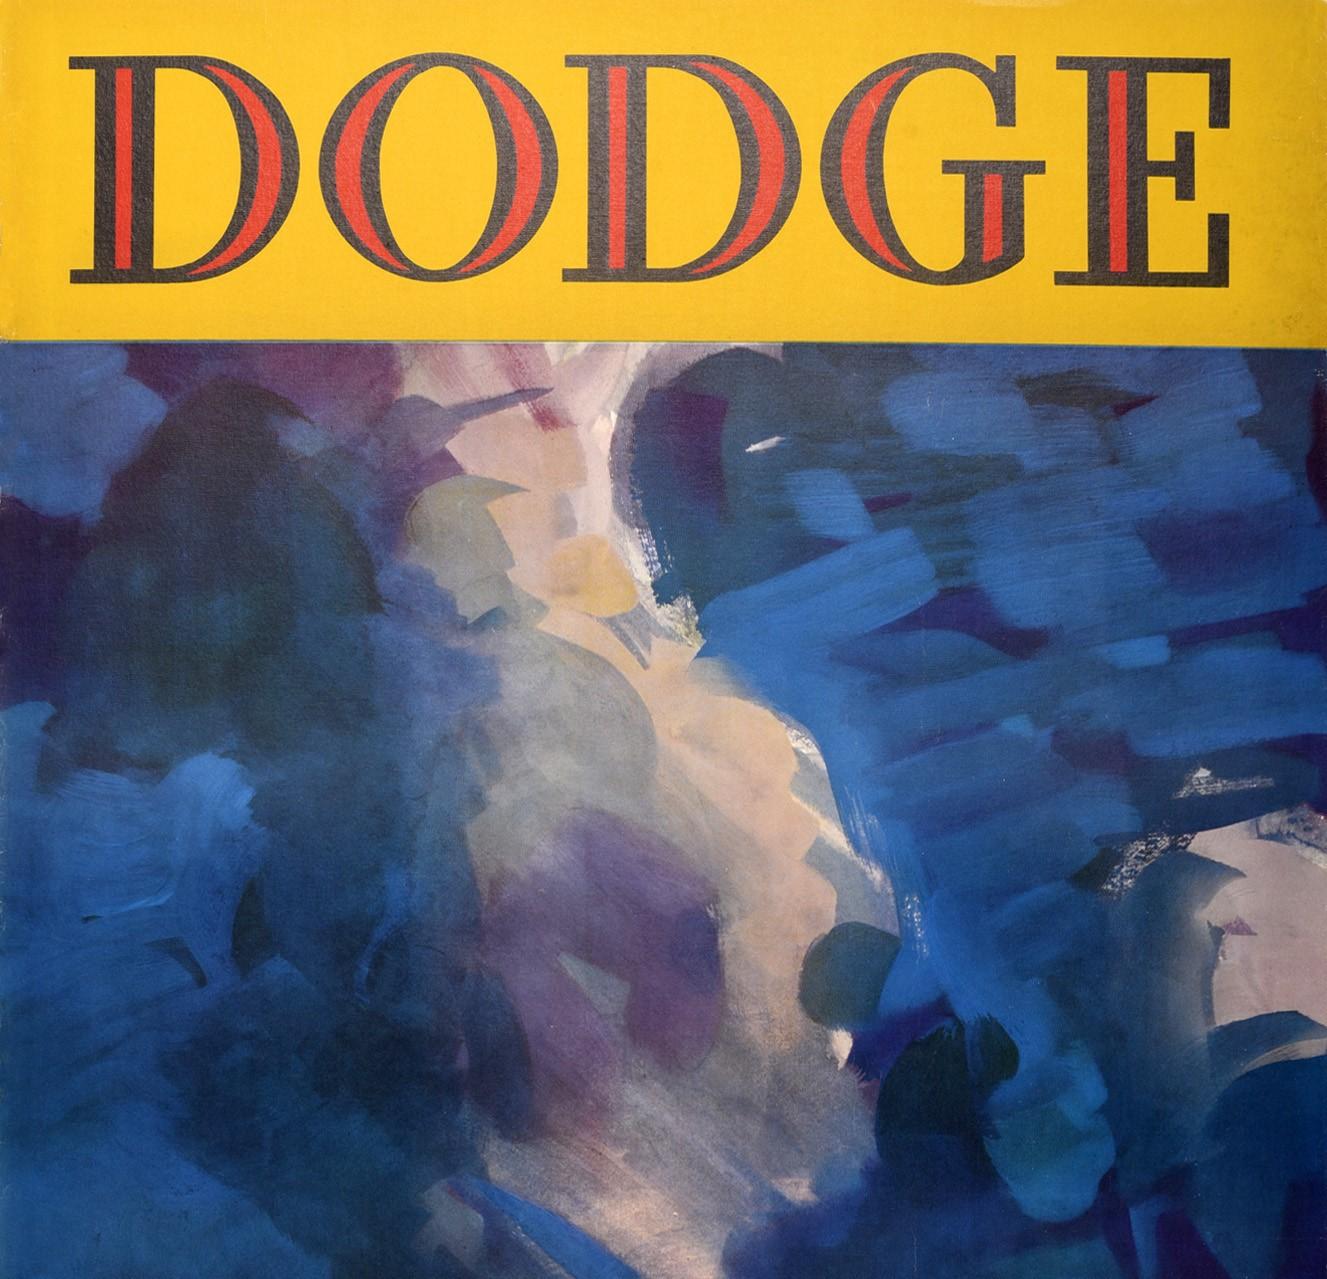 Affiche publicitaire vintage originale pour Dodge présentant un design étonnant montrant une voiture classique Art Déco brillante et élégante devant un fond bleu dramatique. Fondée en 1900, Dodge est une marque automobile américaine fabriquant des